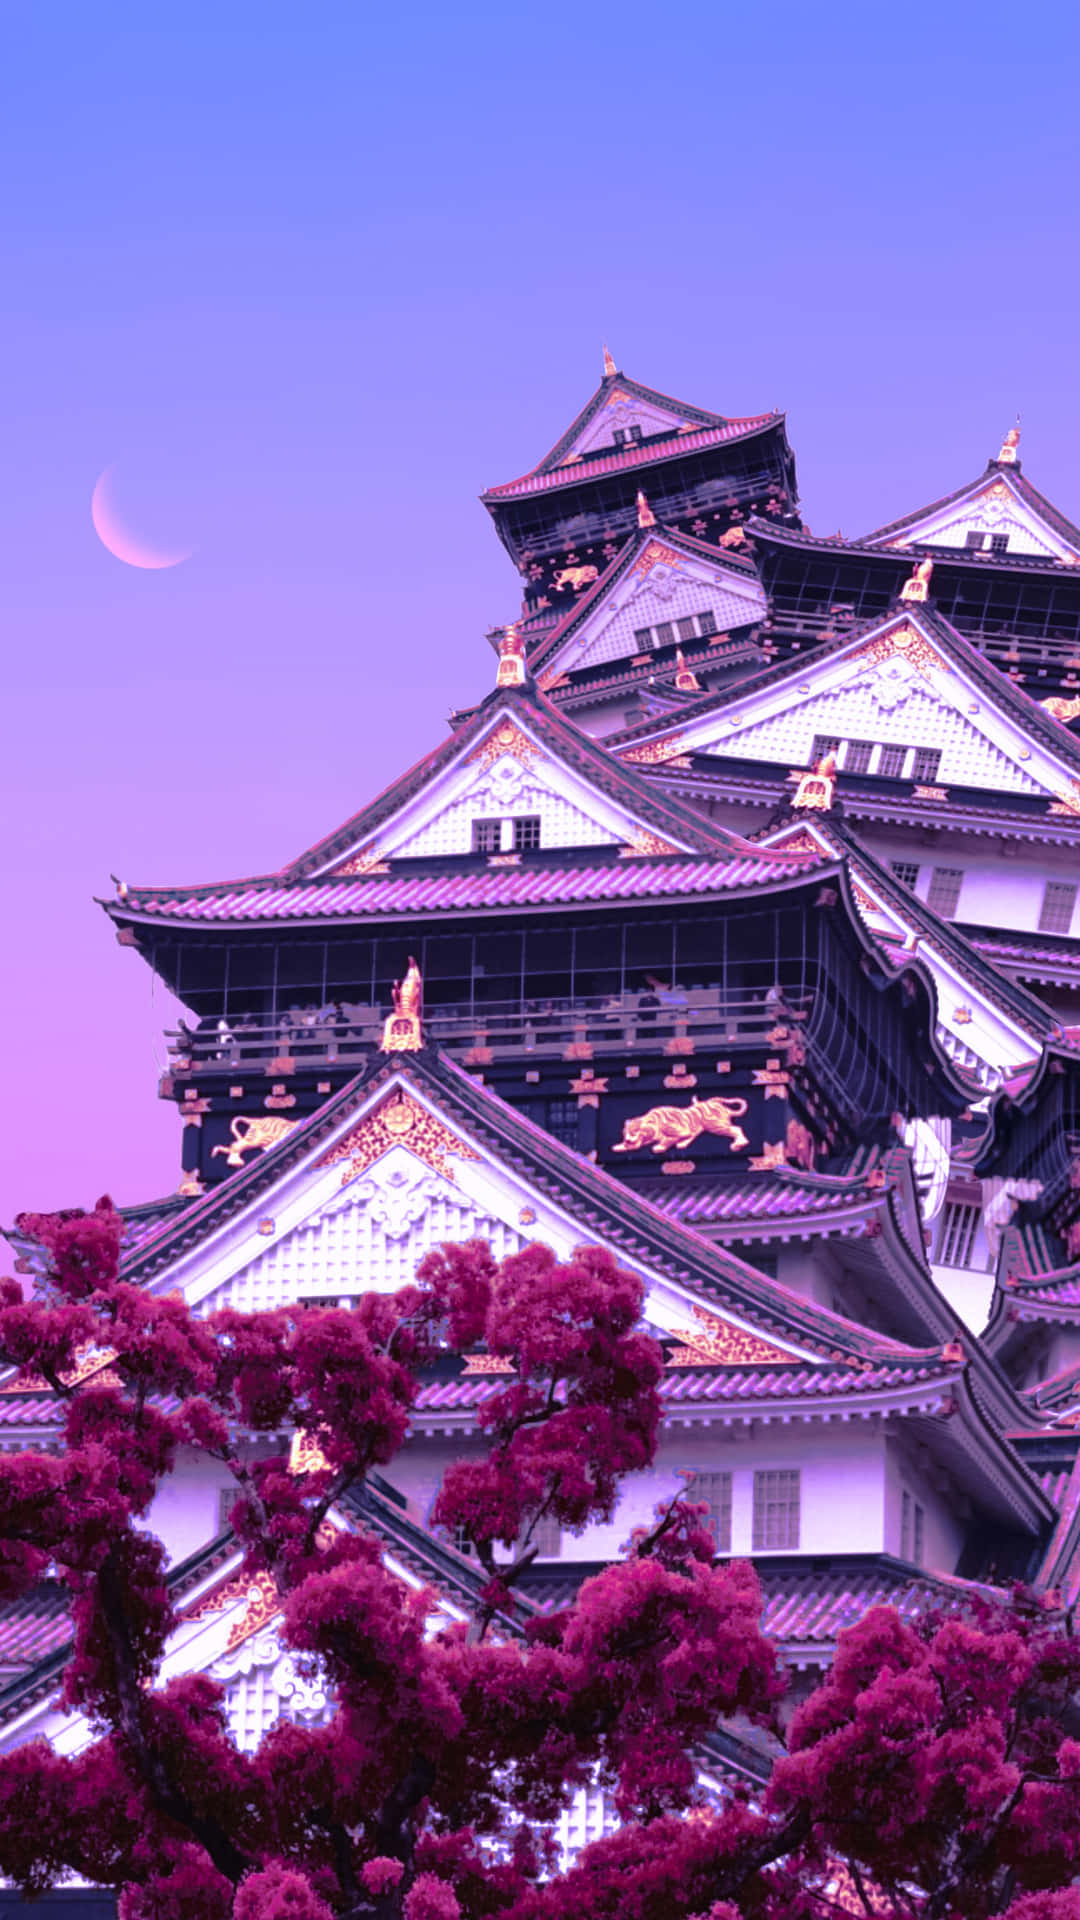 Genießensie Einen Wunderschönen Abend Inmitten Der Schön Beleuchteten Japanischen Landschaft. Wallpaper